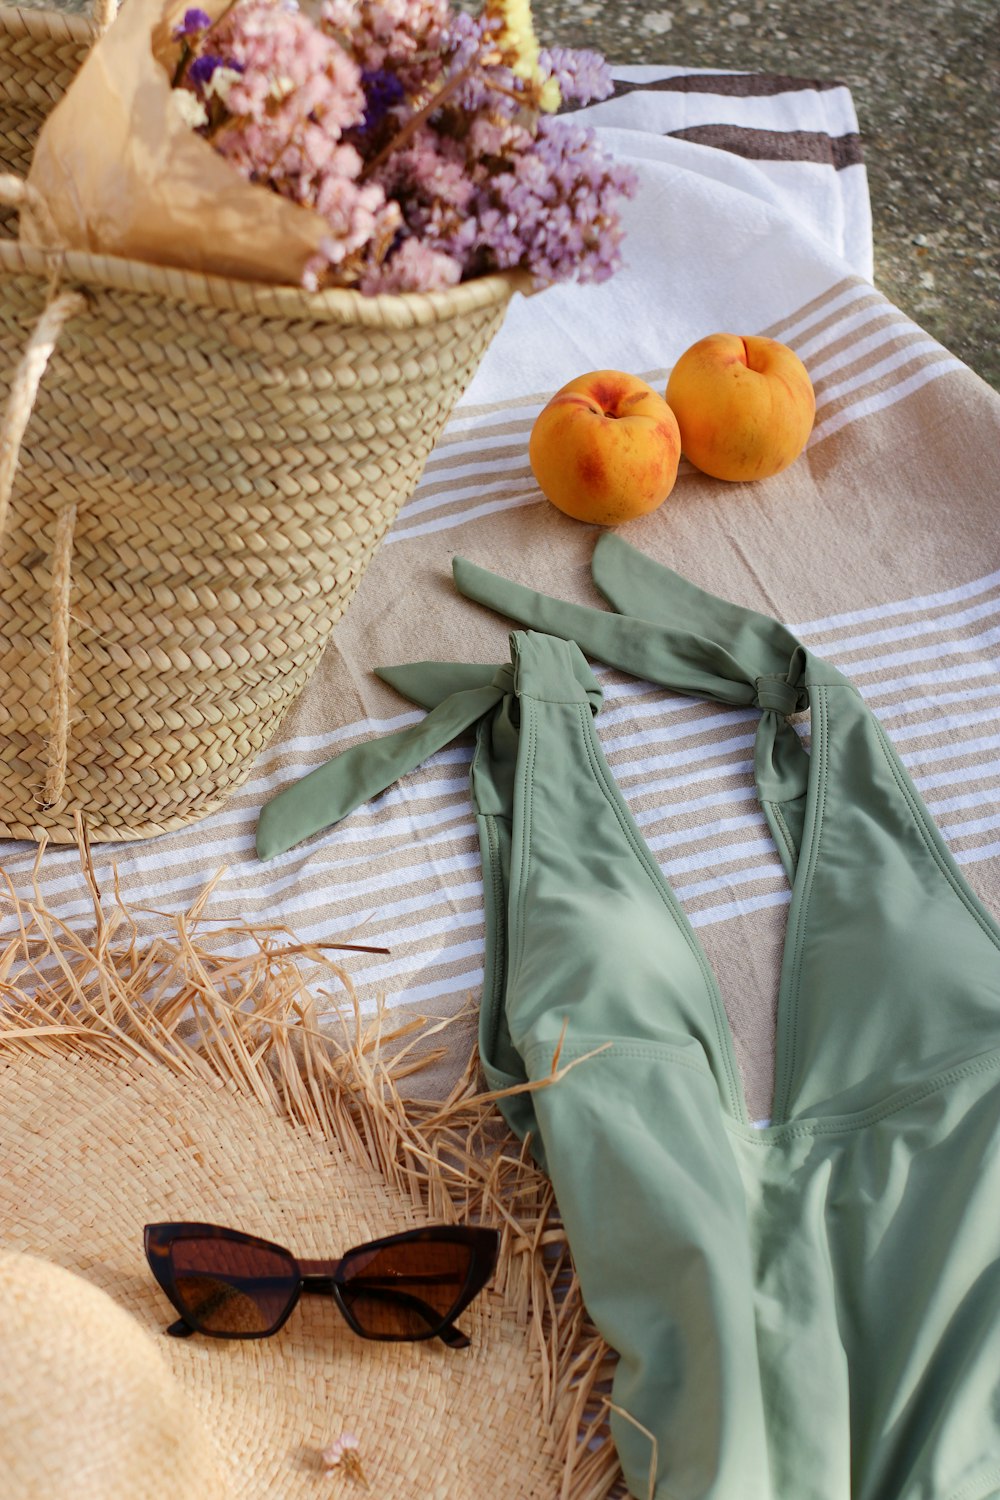 orange fruit on brown woven basket